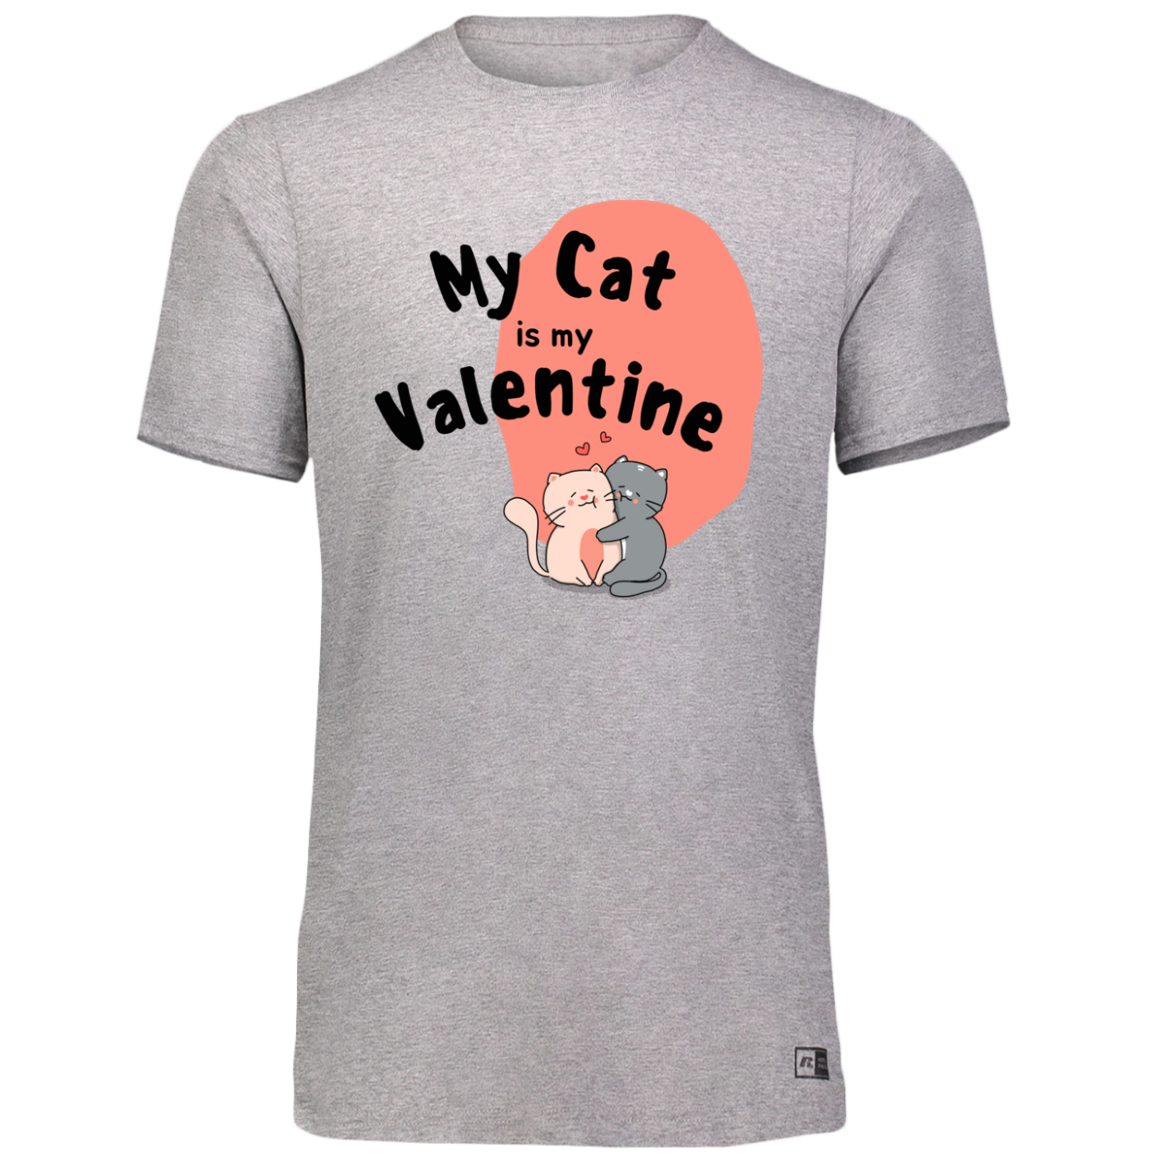 Women's Dri-Power Tee--My Cat is My Valentine